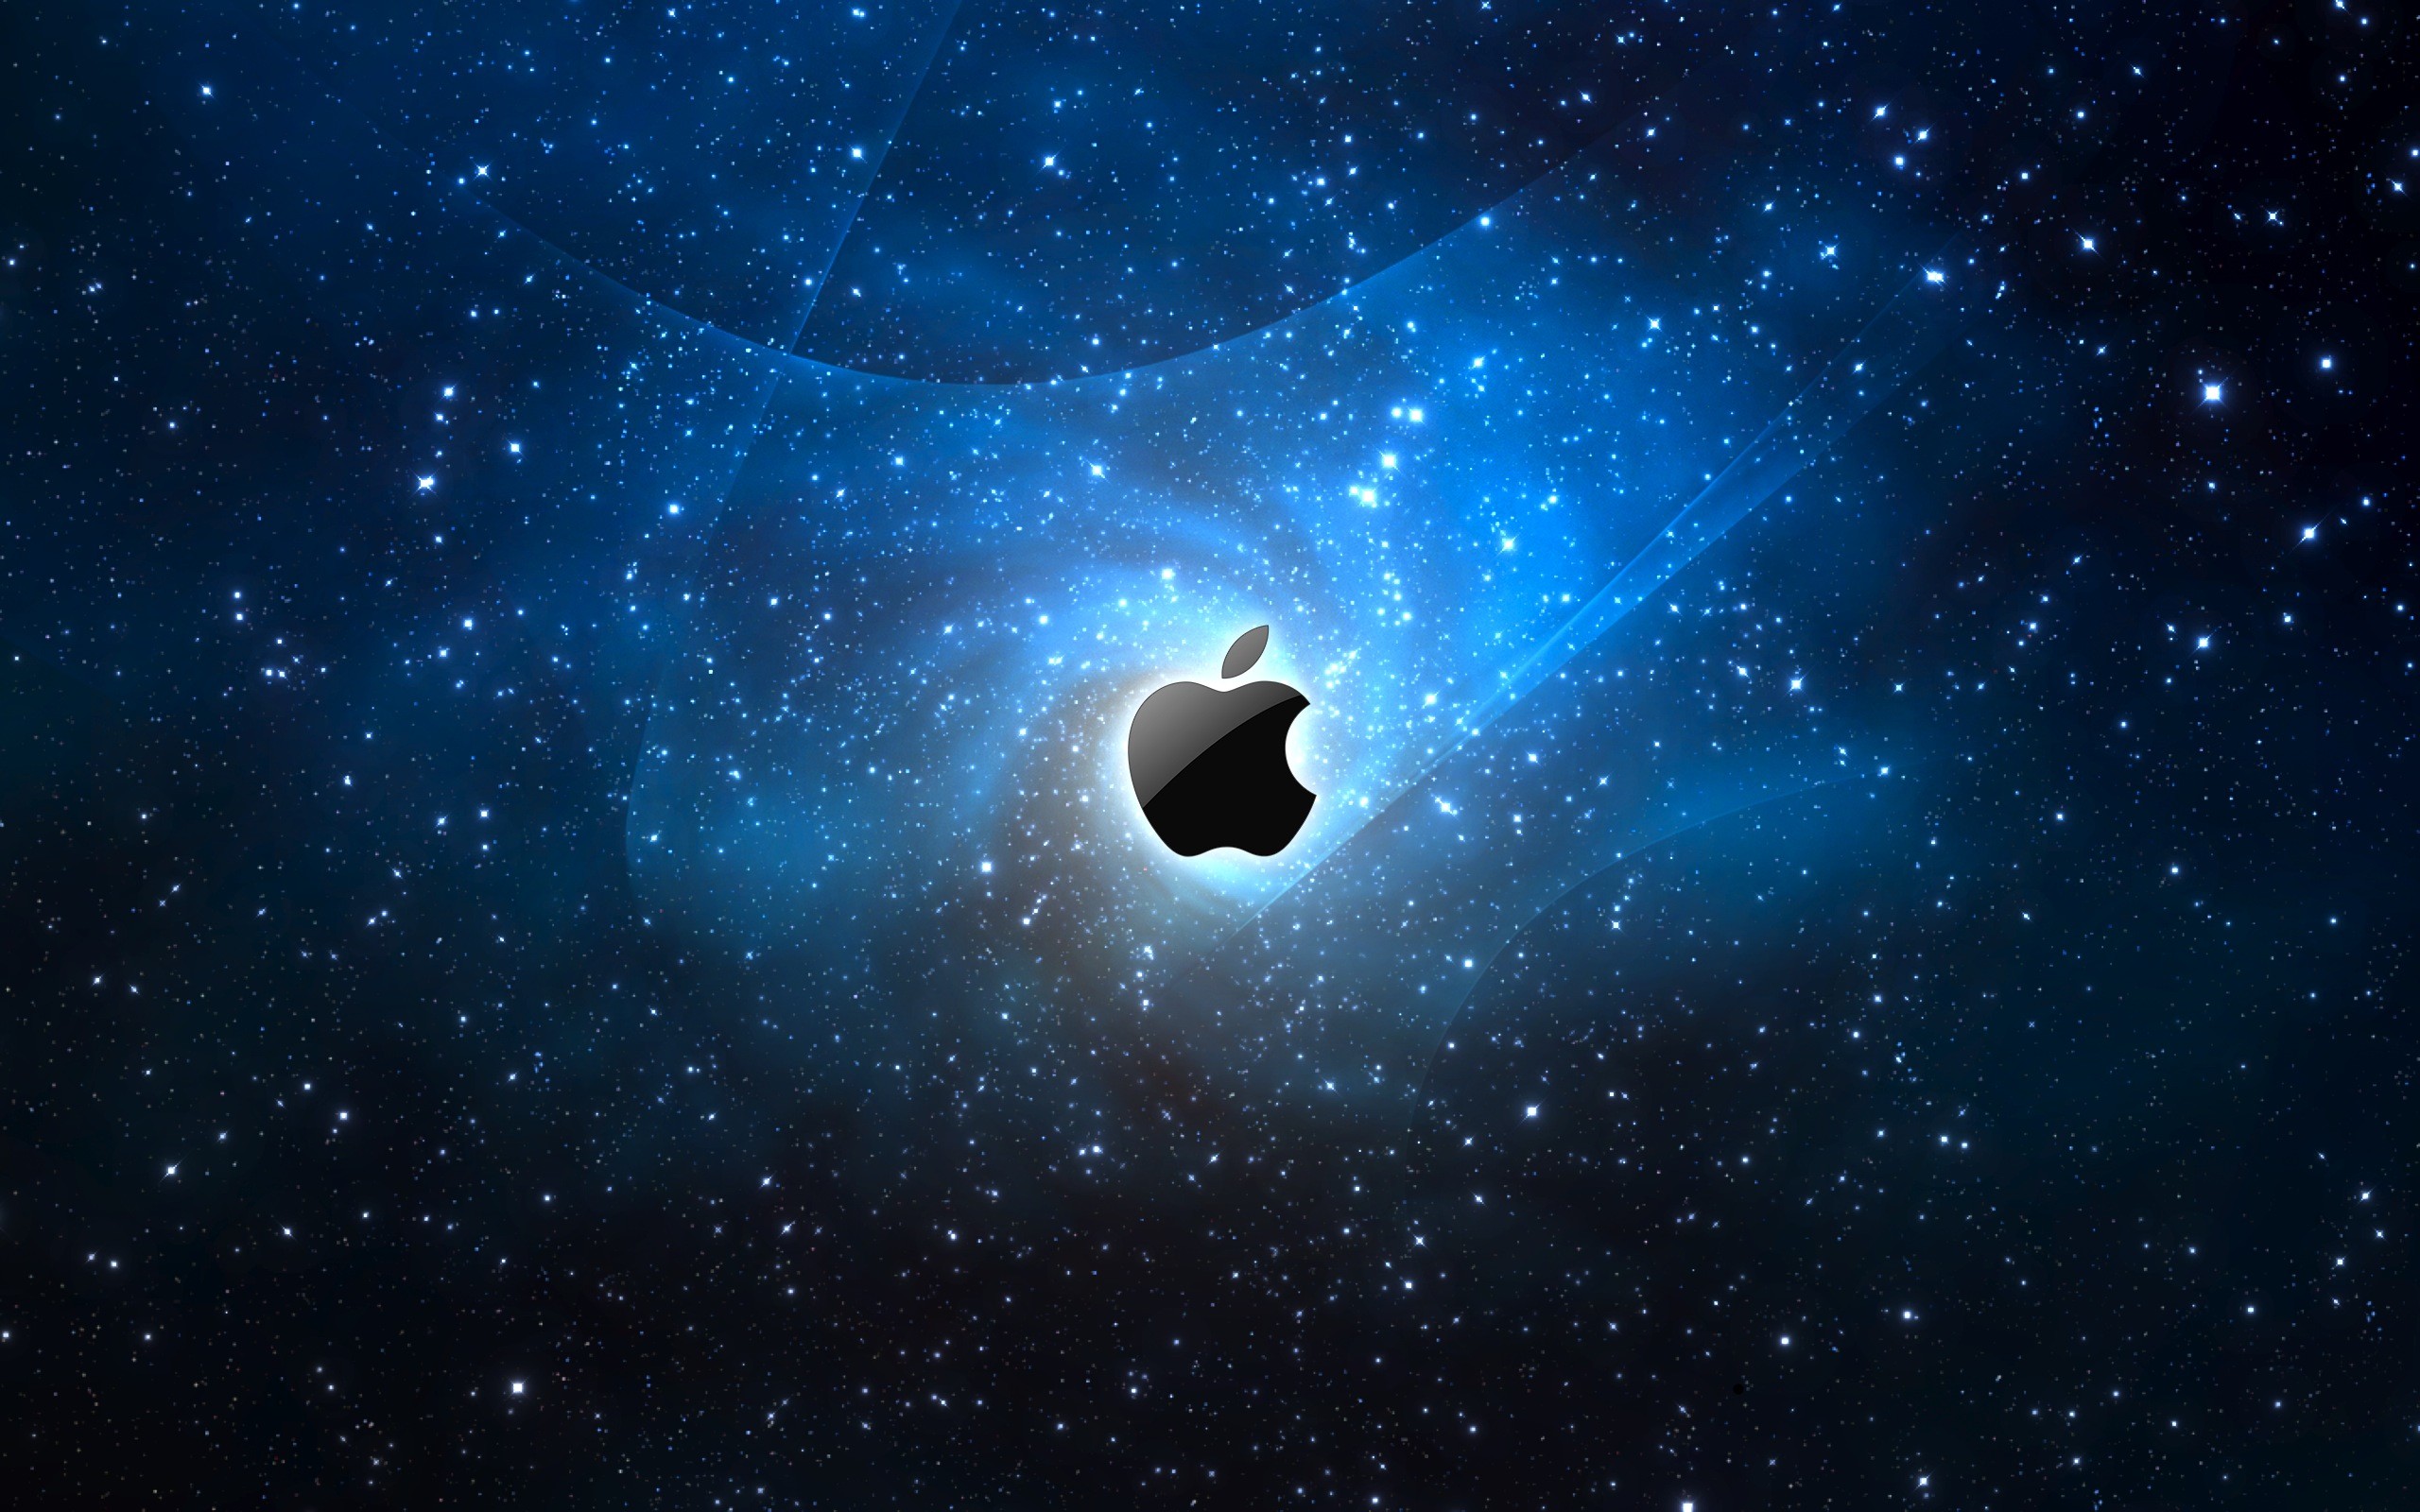 2560x1600 Space shuttle wallpaper hd space apple logo wallpaper space